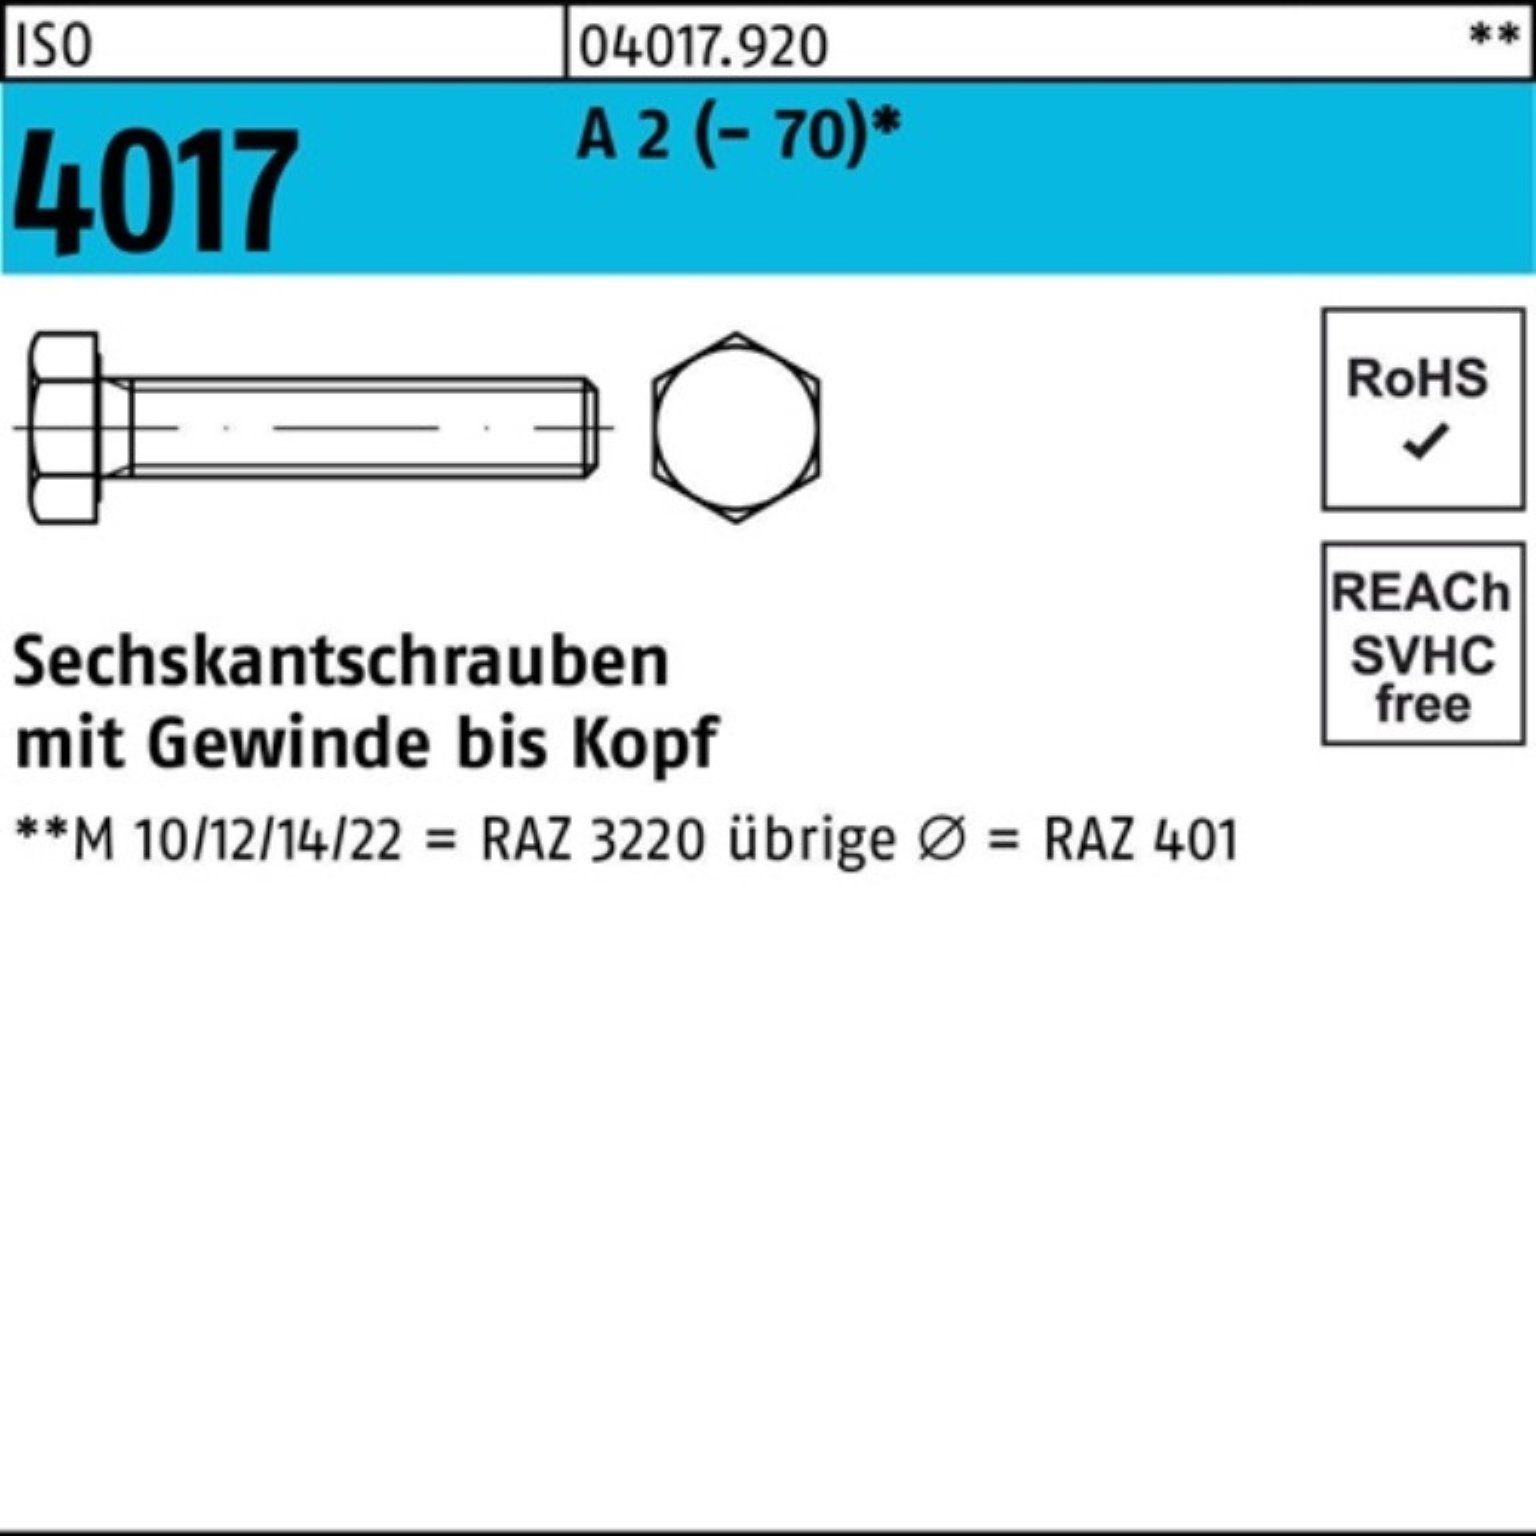 Bufab Sechskantschraube 100er Pack Sechskantschraube ISO 4017 VG M27x 60 A 2 (70) 1 Stück I | Schrauben